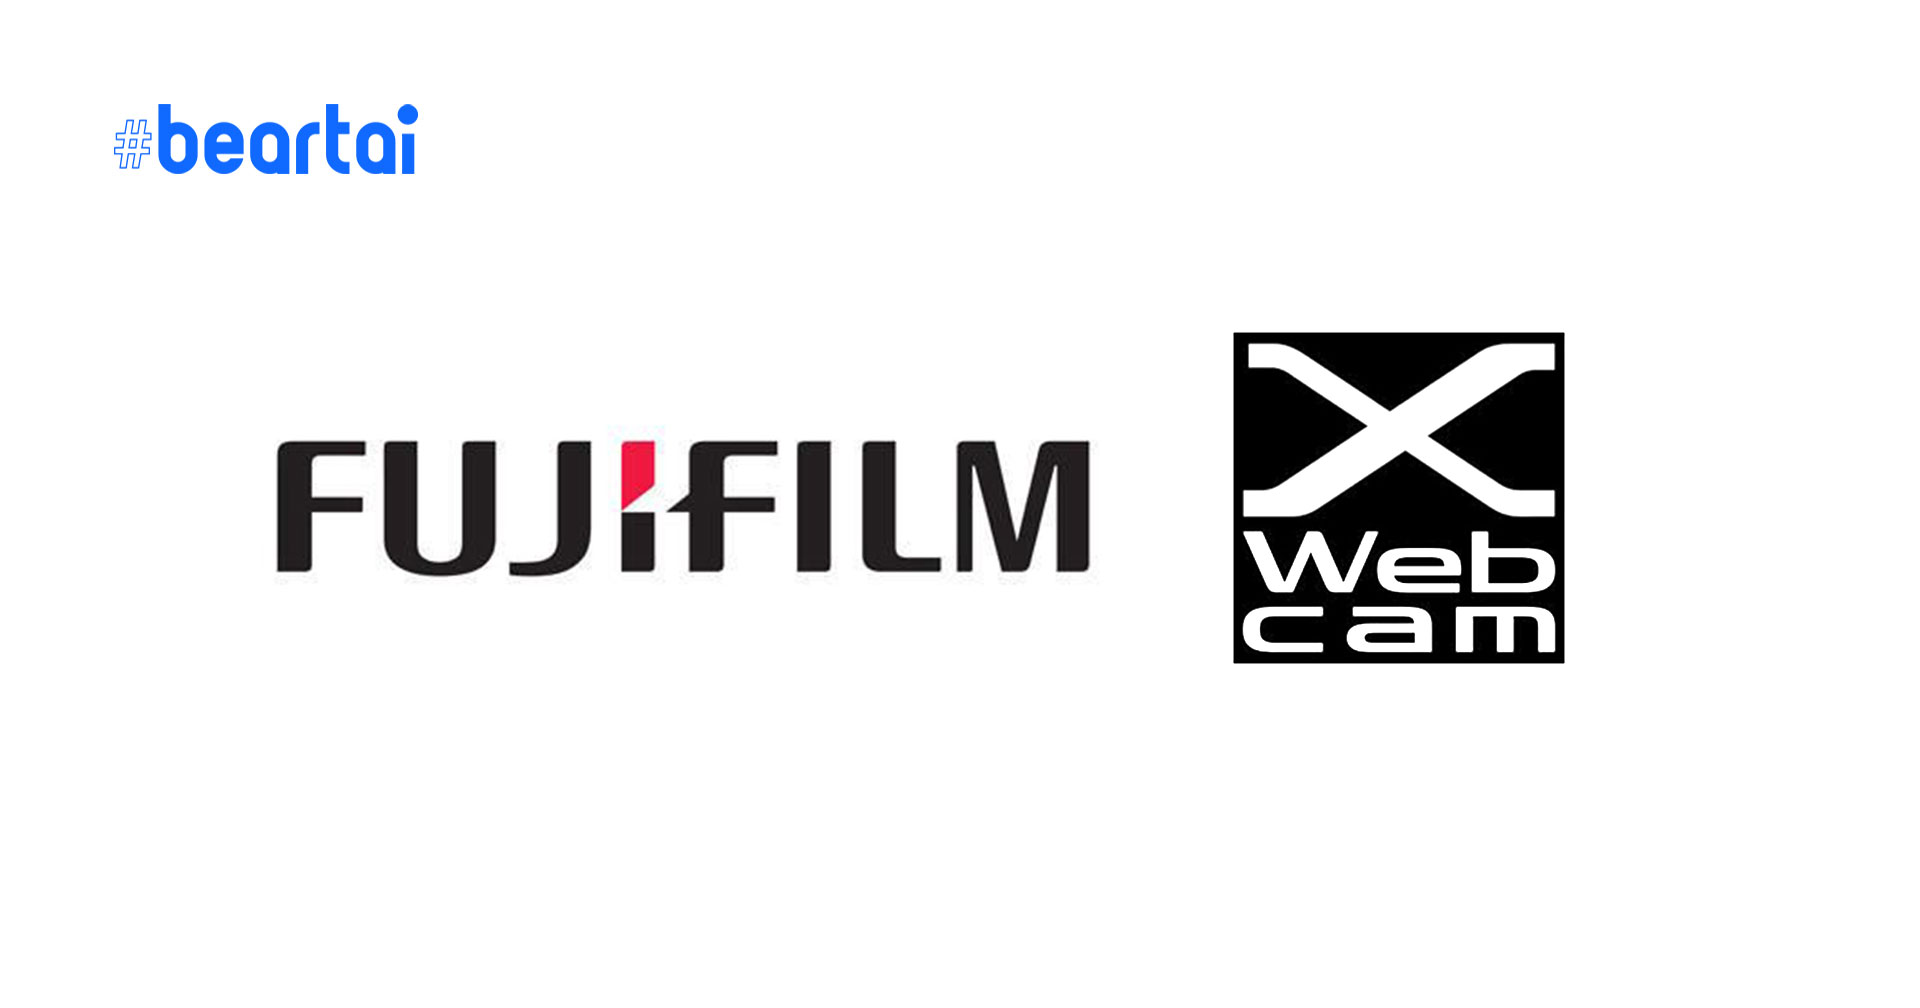 มาแล้ว! Fujifilm X Webcam 2.0 เพิ่มฟังก์ชันปรับค่ากล้องได้โดยตรงผ่านคอมพิวเตอร์!